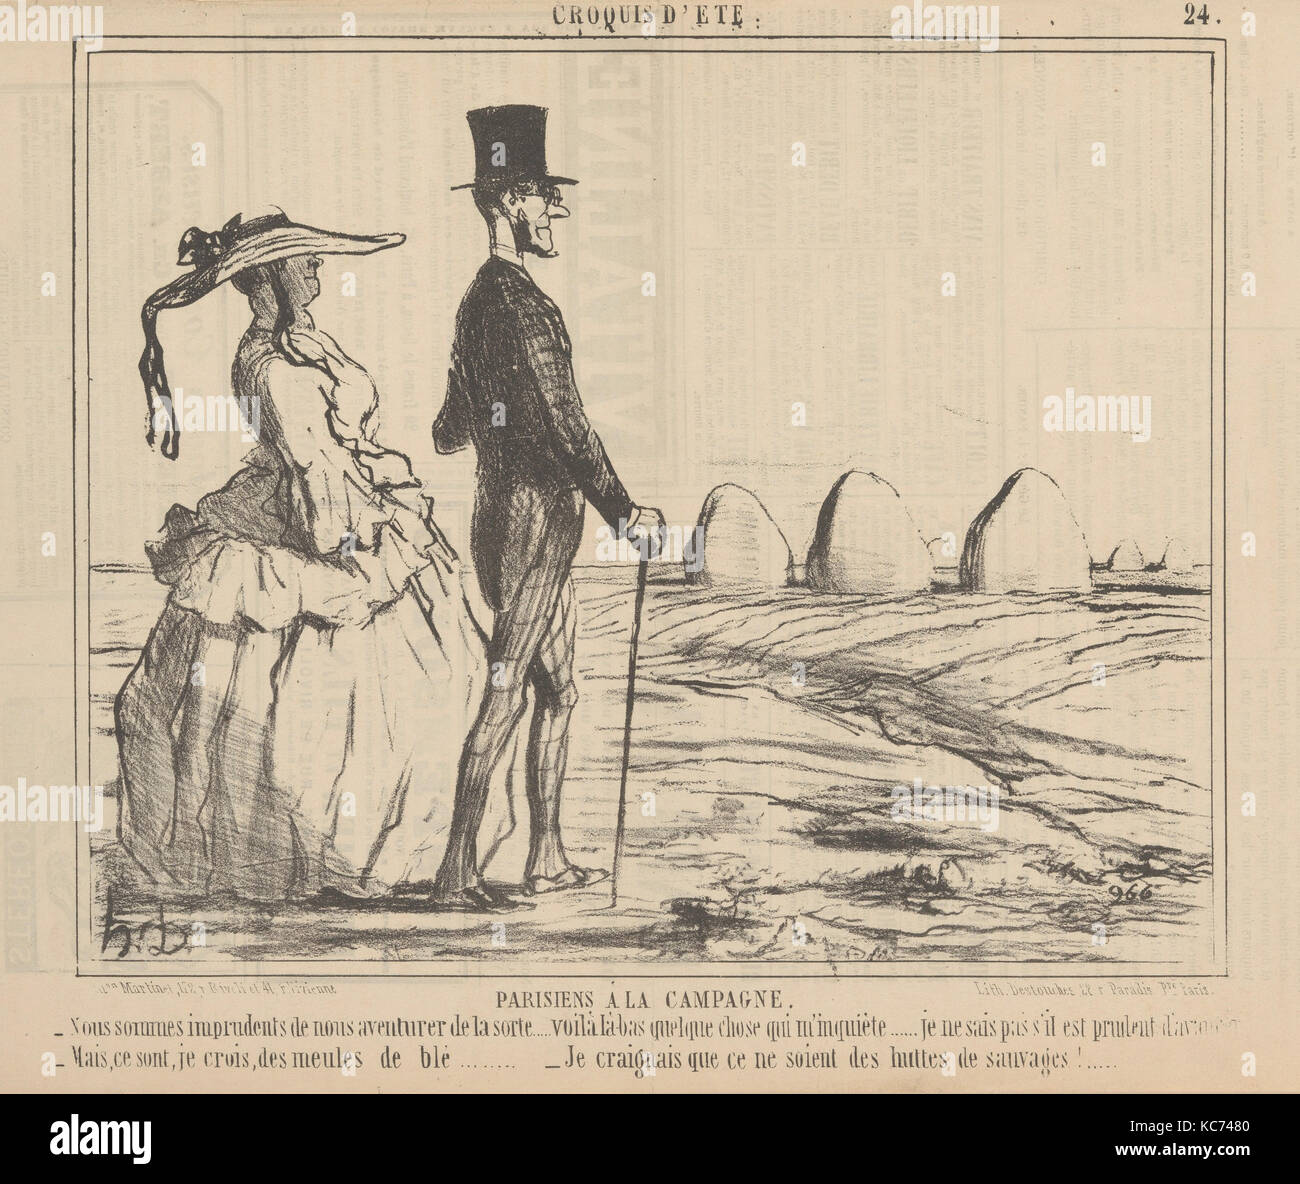 Un croquis d'été : les parisiens à la campagne, Honoré Daumier, 1857 Banque D'Images